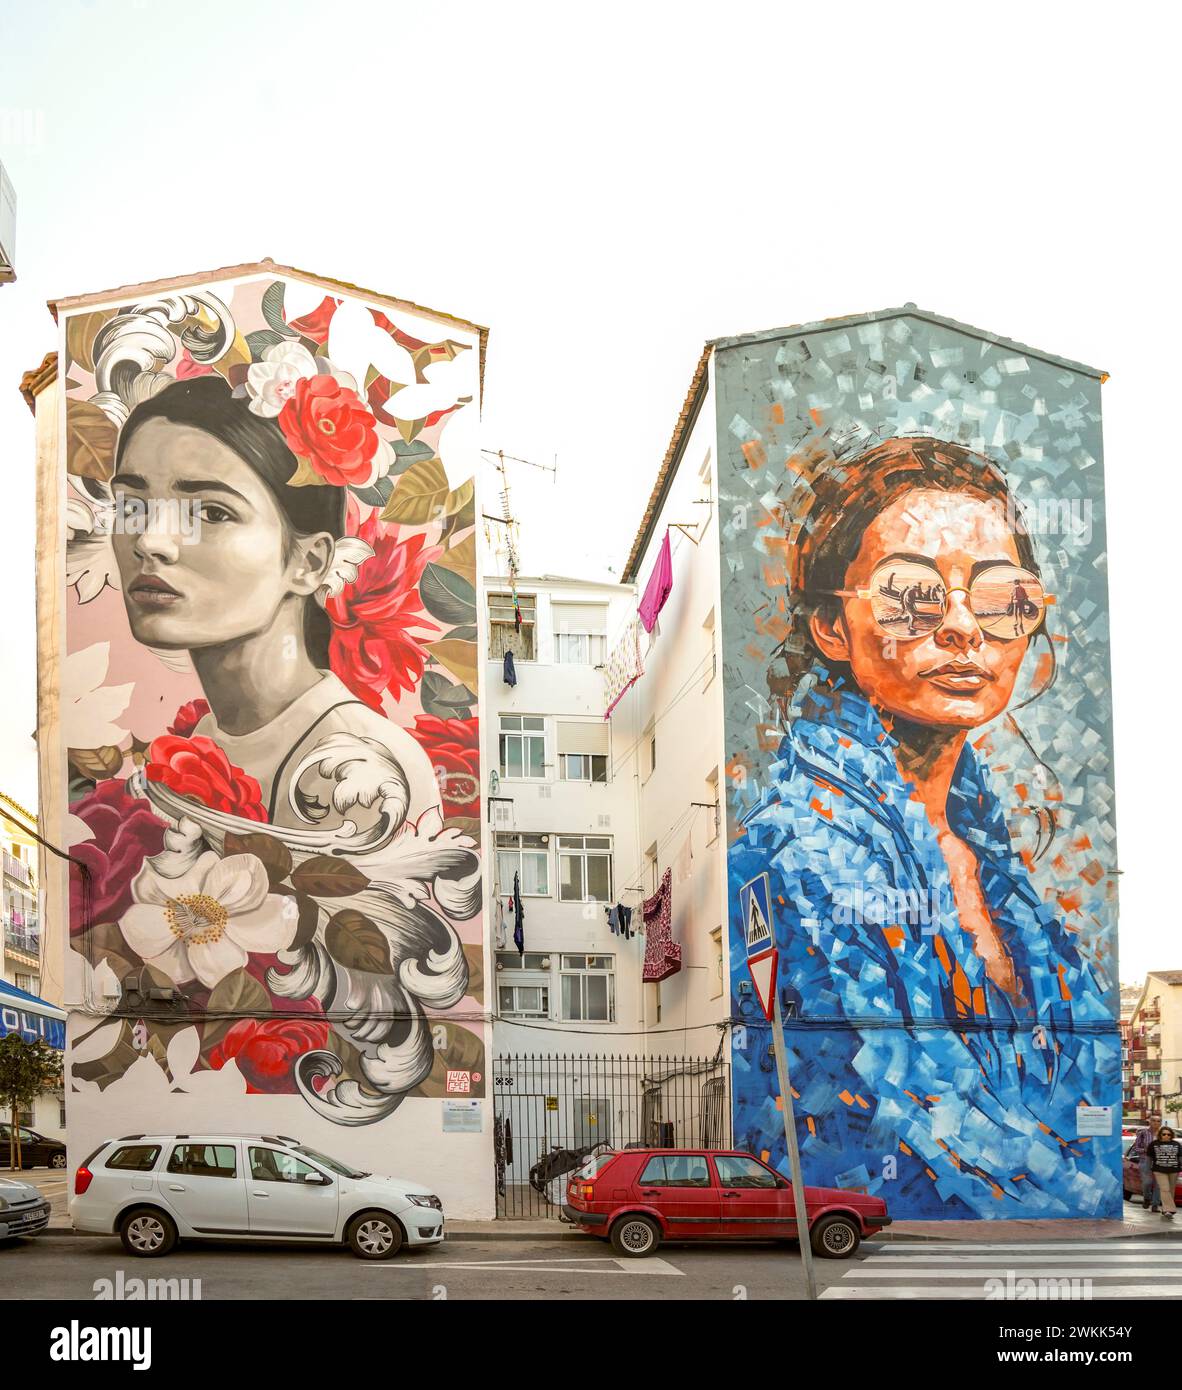 Peintures murales sur les façades de la zone urbaine résidentielle à Fuengirola, Costa del sol, Andalousie, Espagne. Banque D'Images